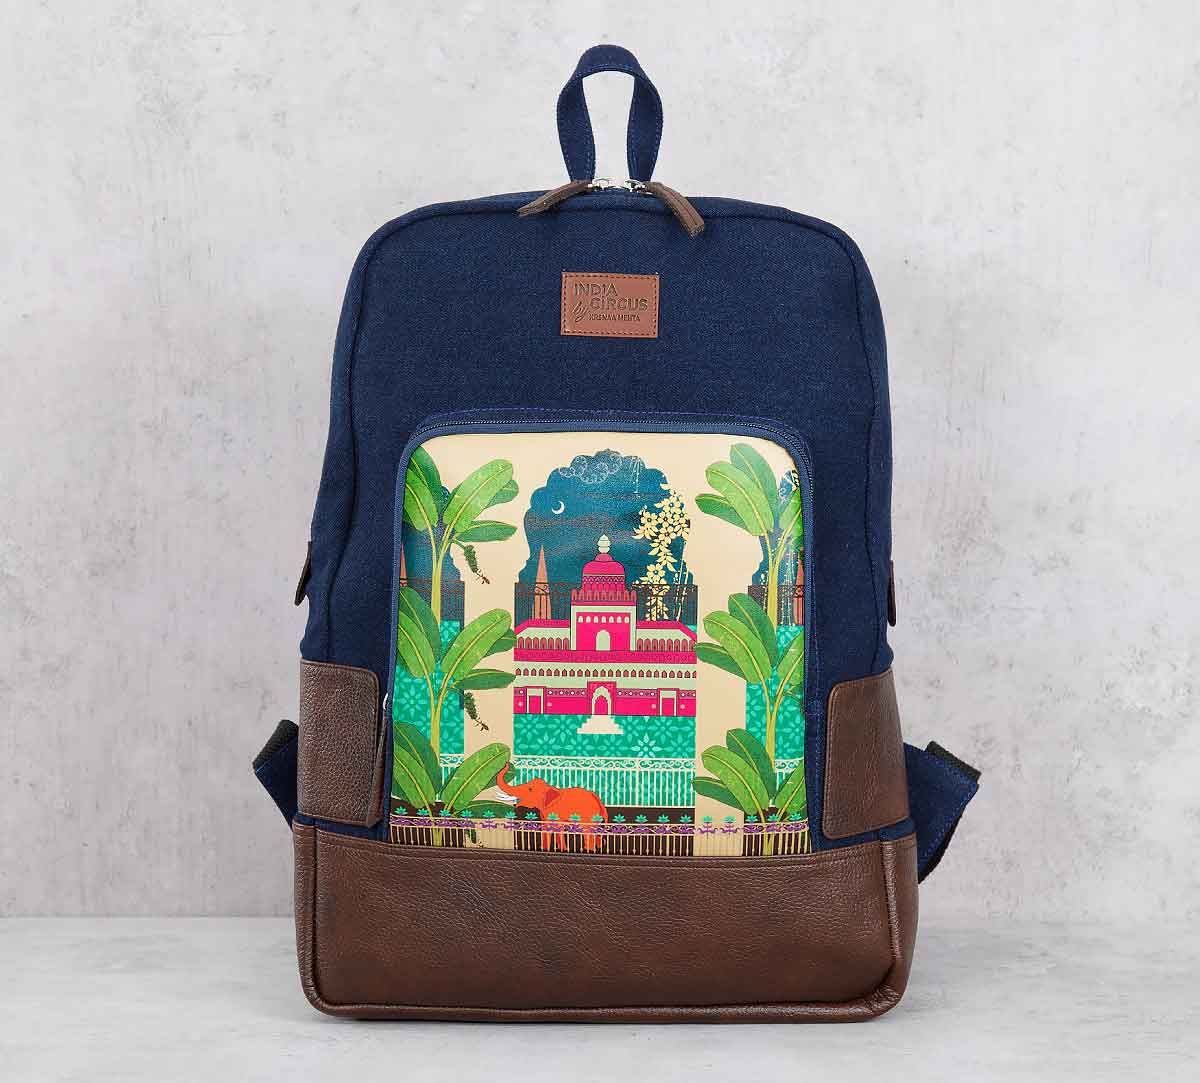 bag guru industries School backpack 25 L Backpack Blue - Price in India |  Flipkart.com